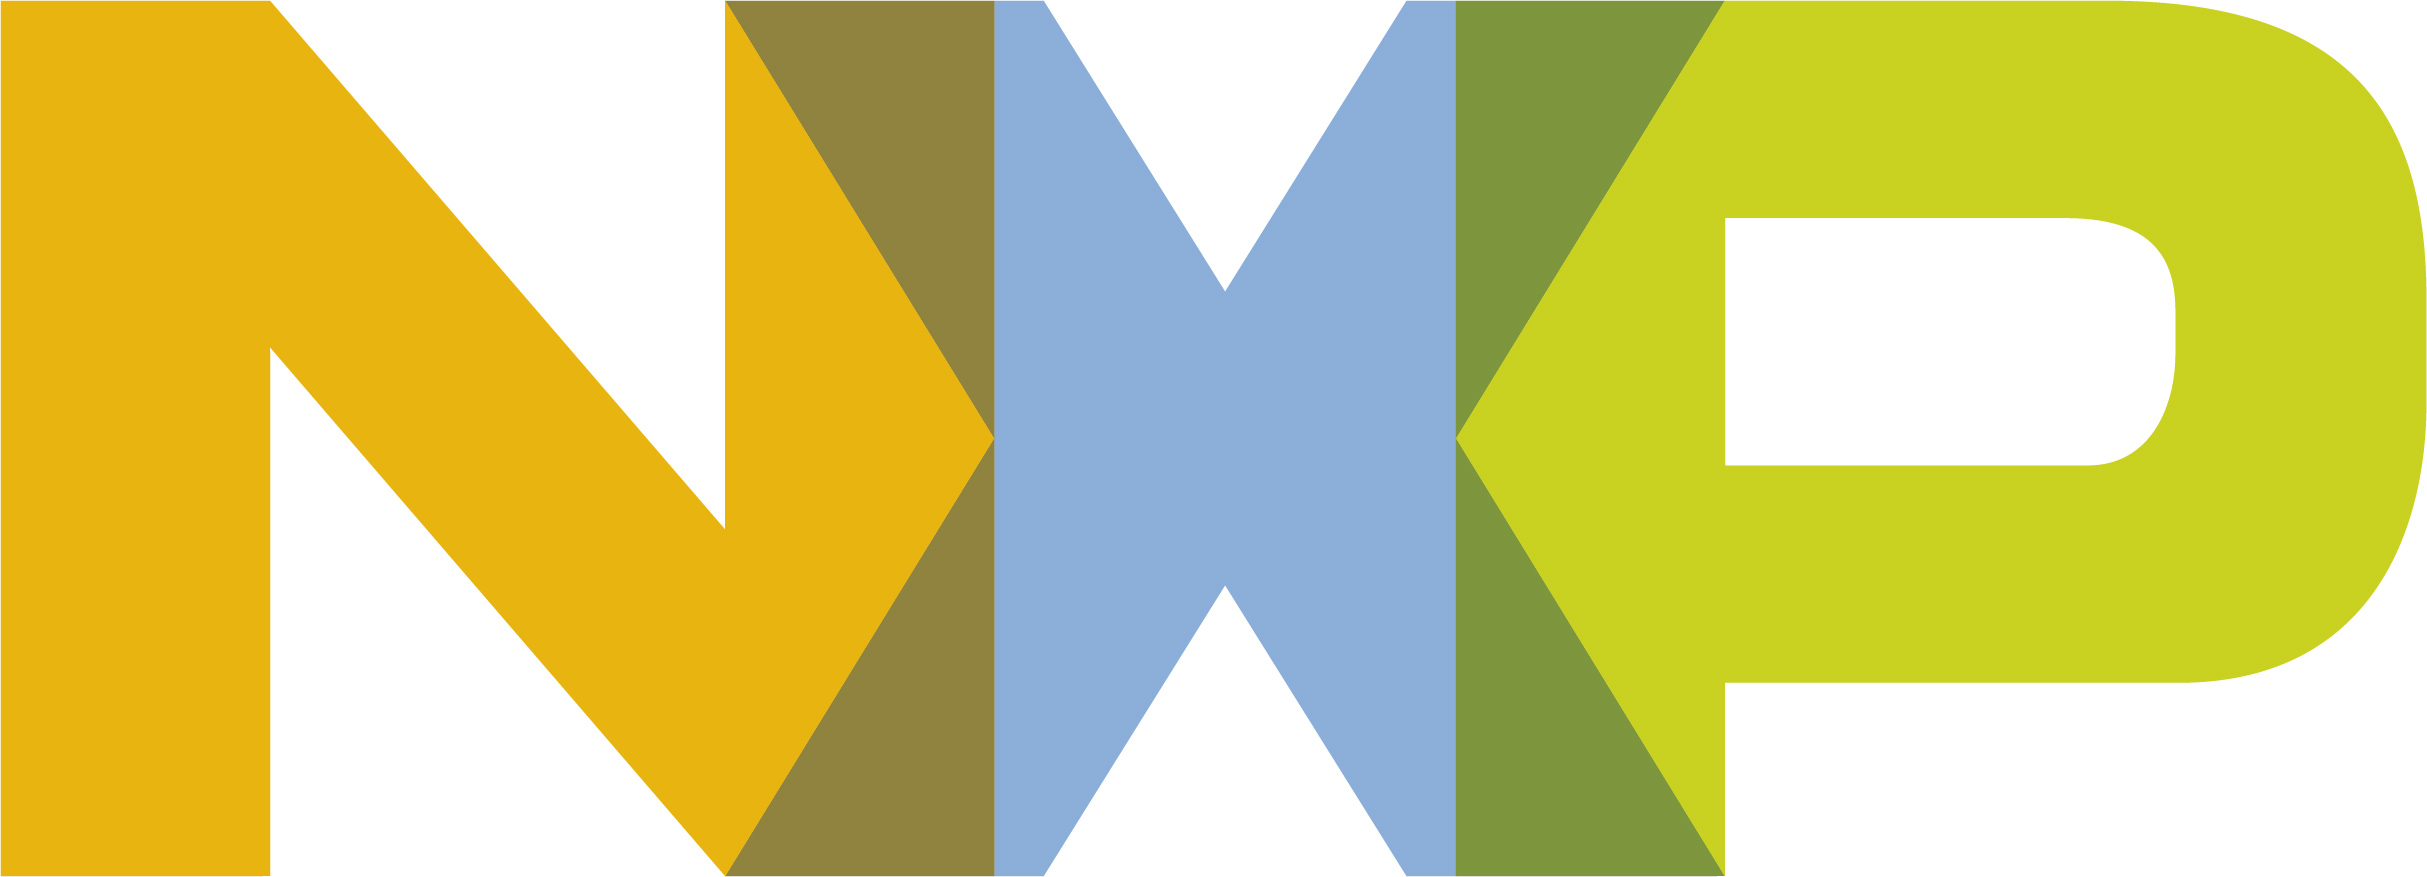 NXP-Logo.jpg